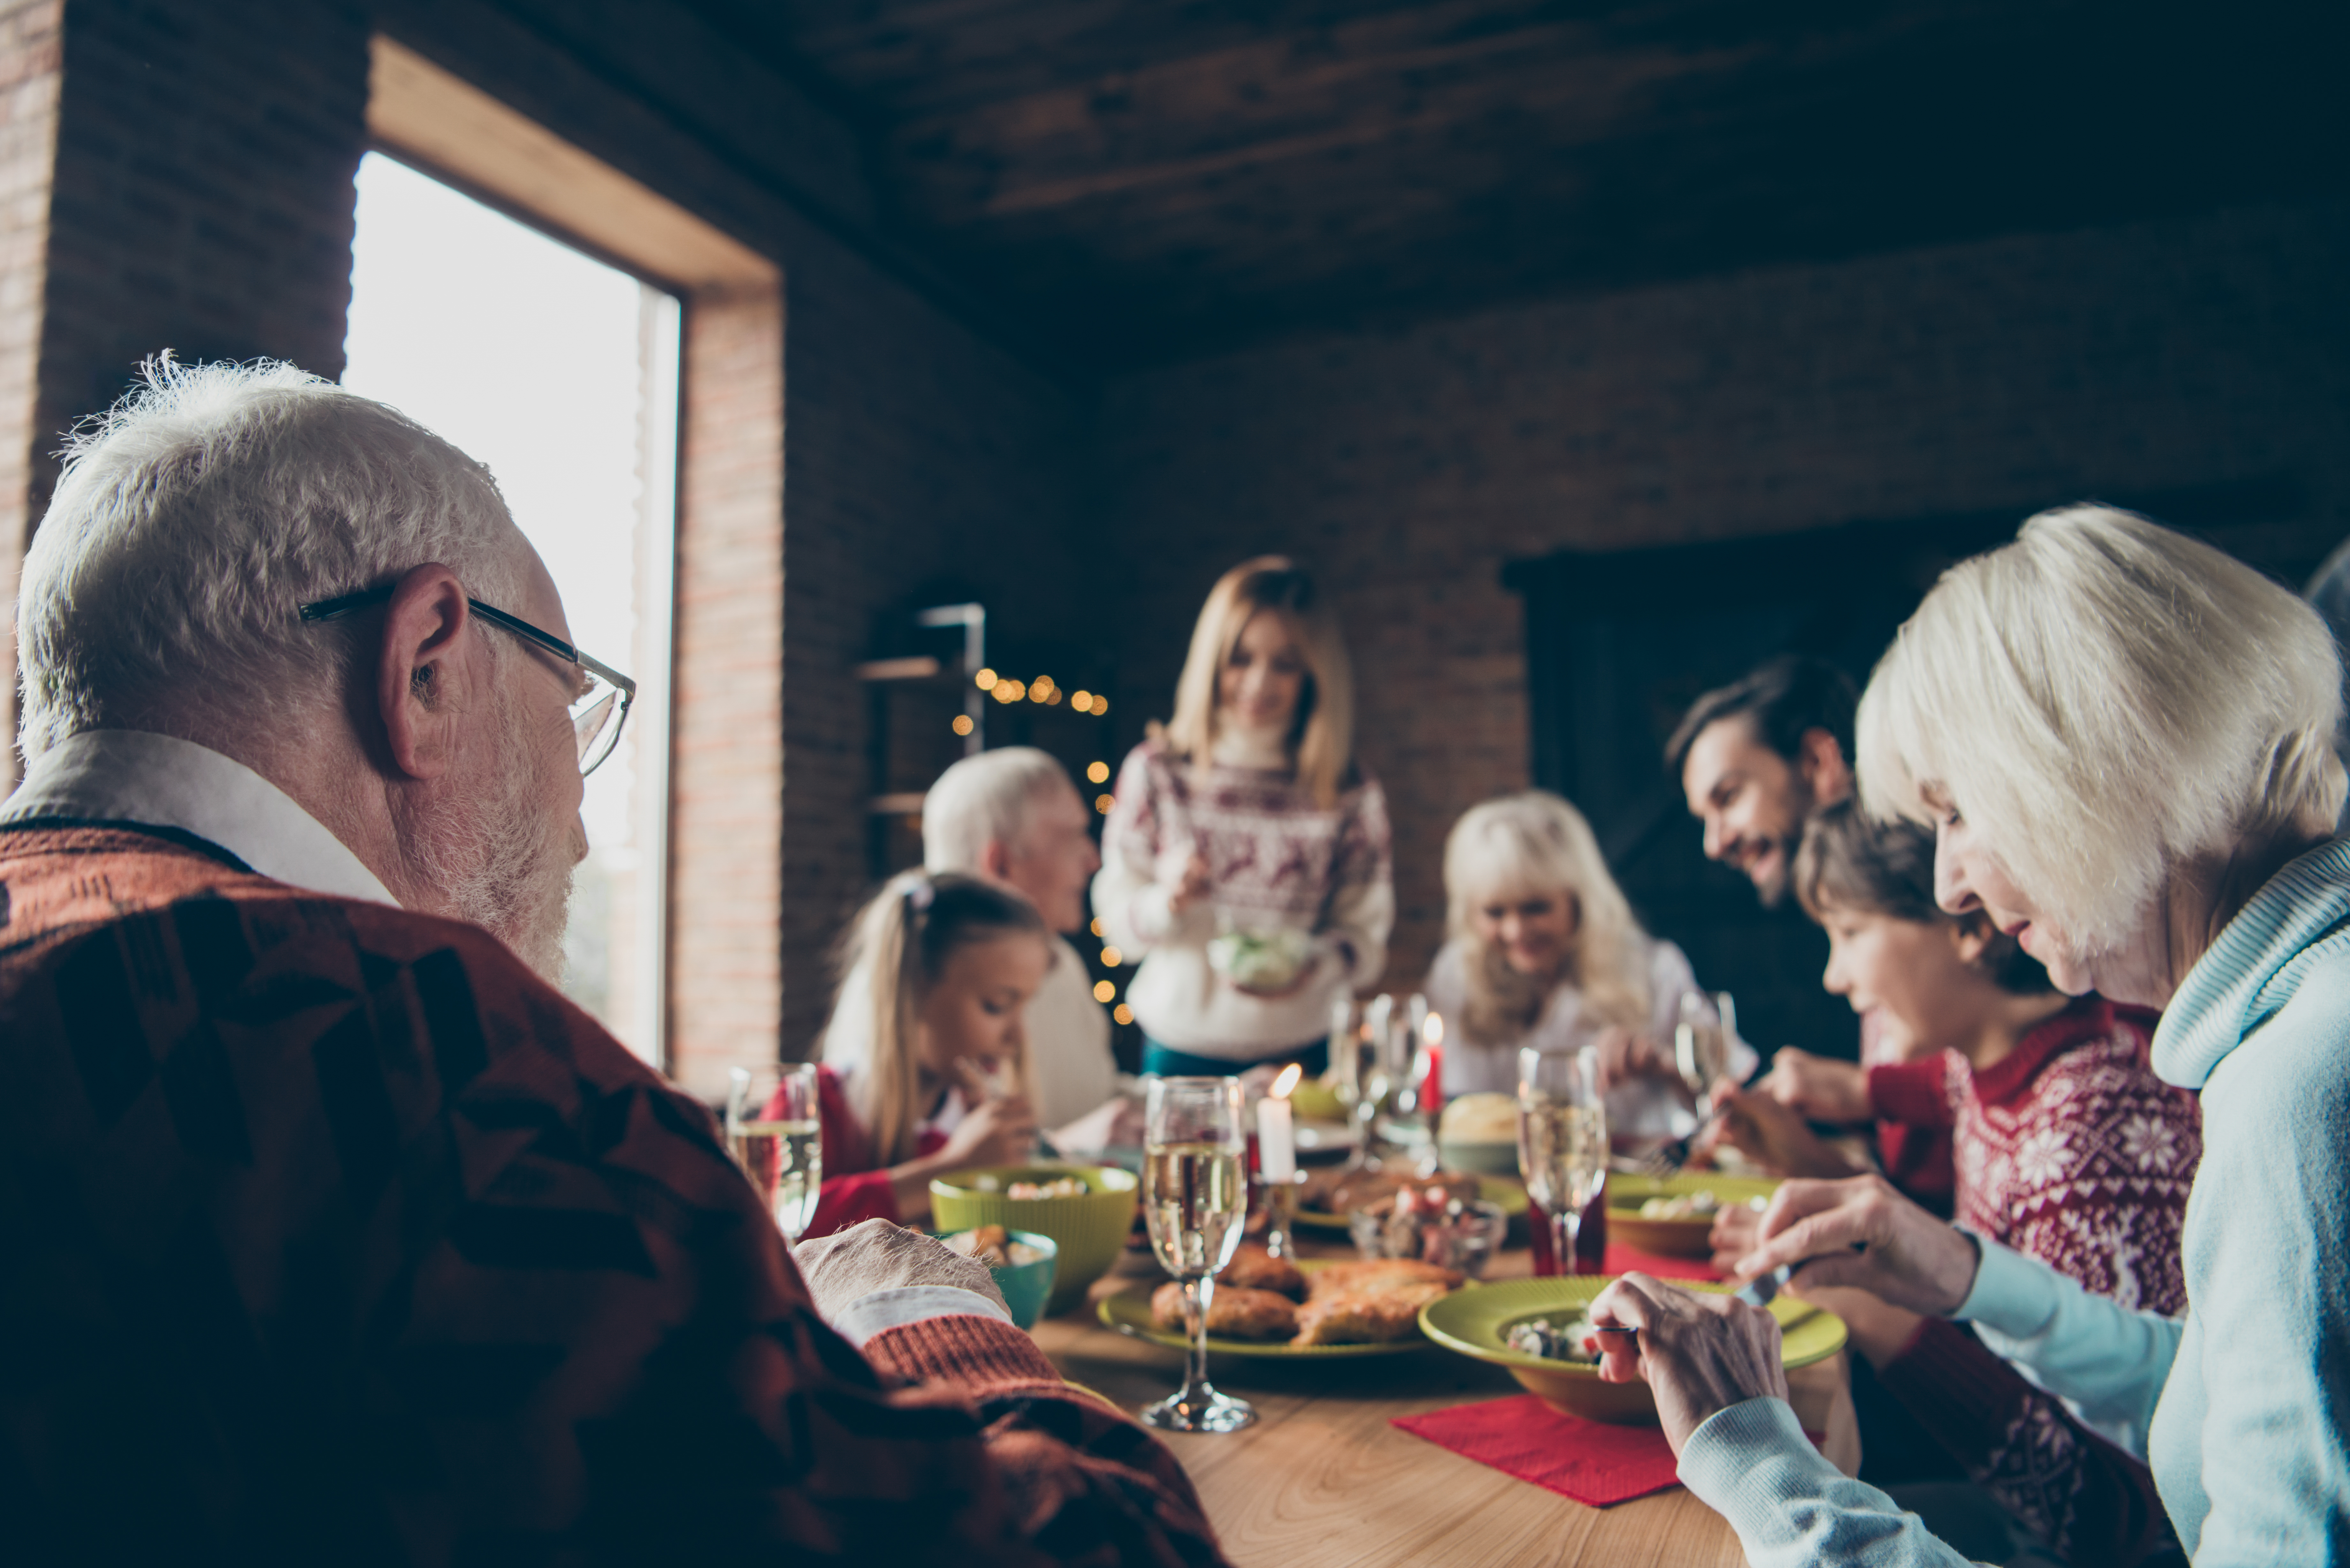 Eine Familie, die gemeinsam eine Mahlzeit genießt | Quelle: Shutterstock